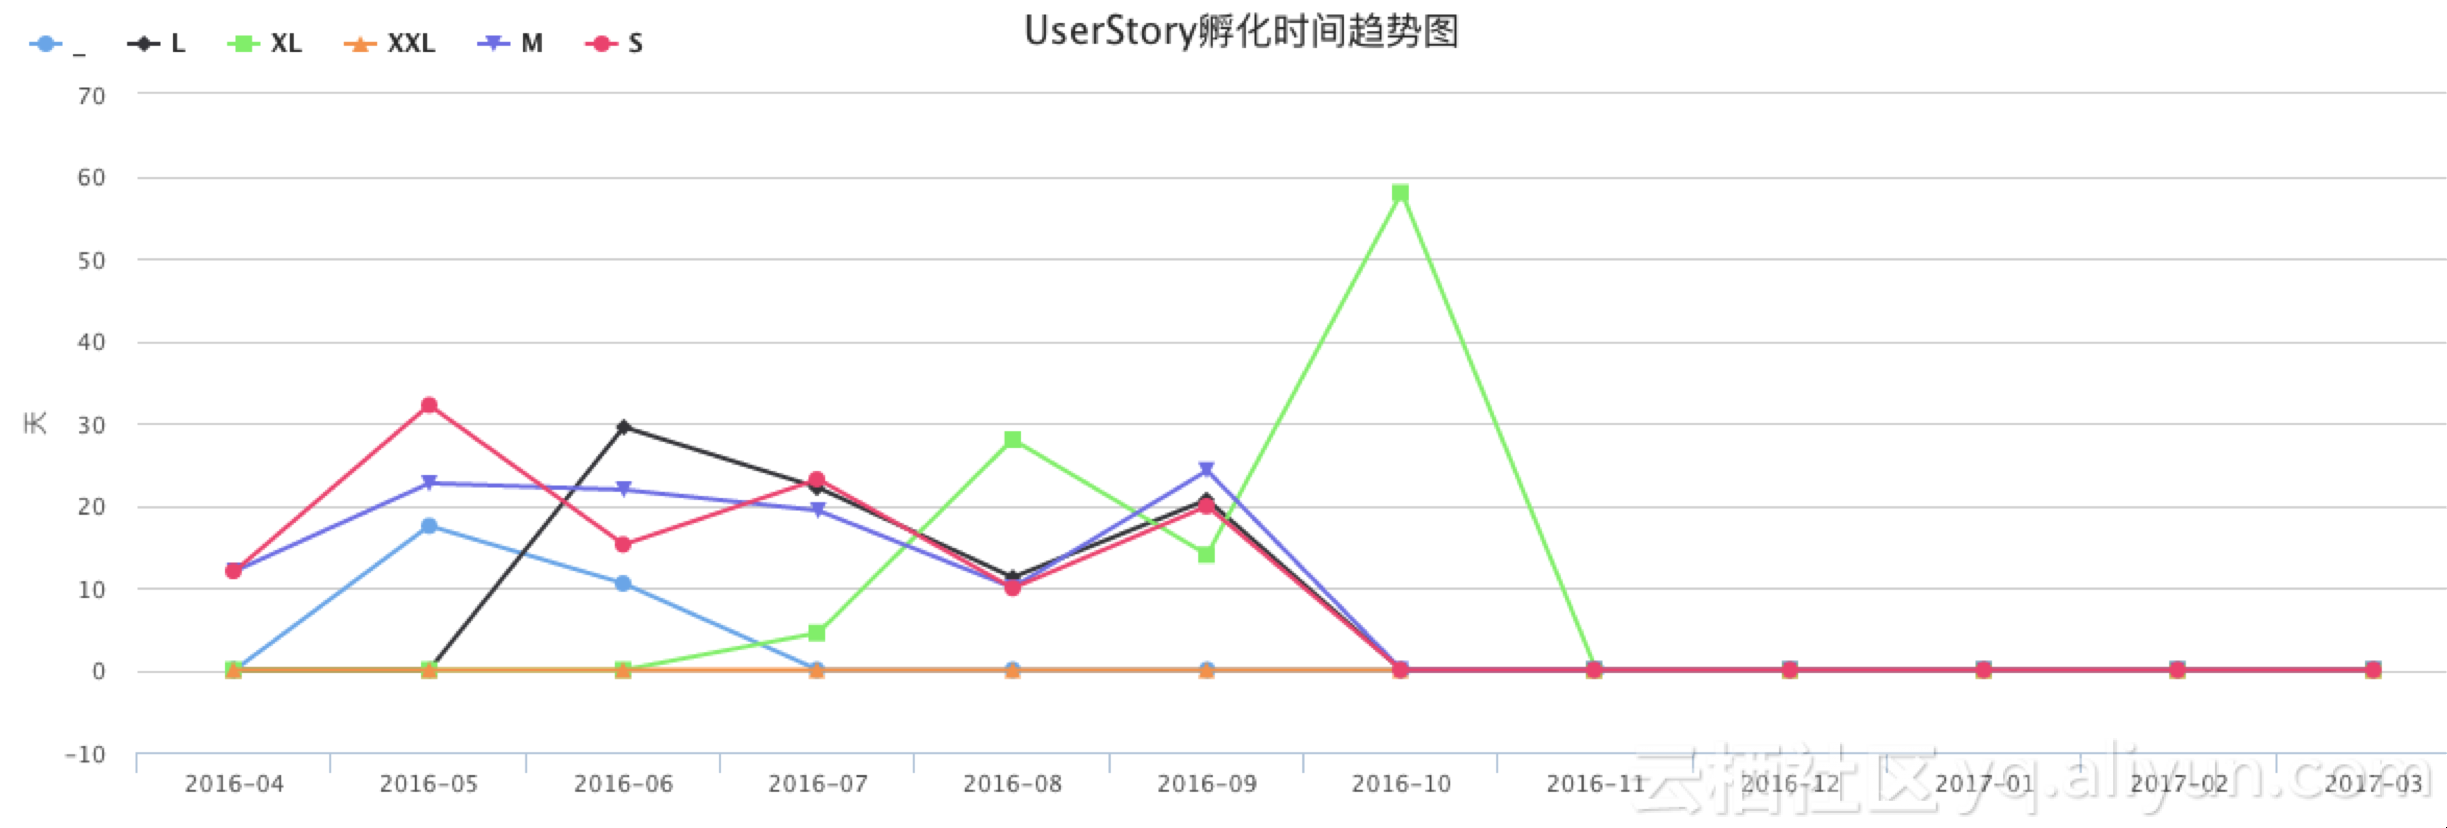 菜鸟不同规模需求的UserStory孵化时间趋势图